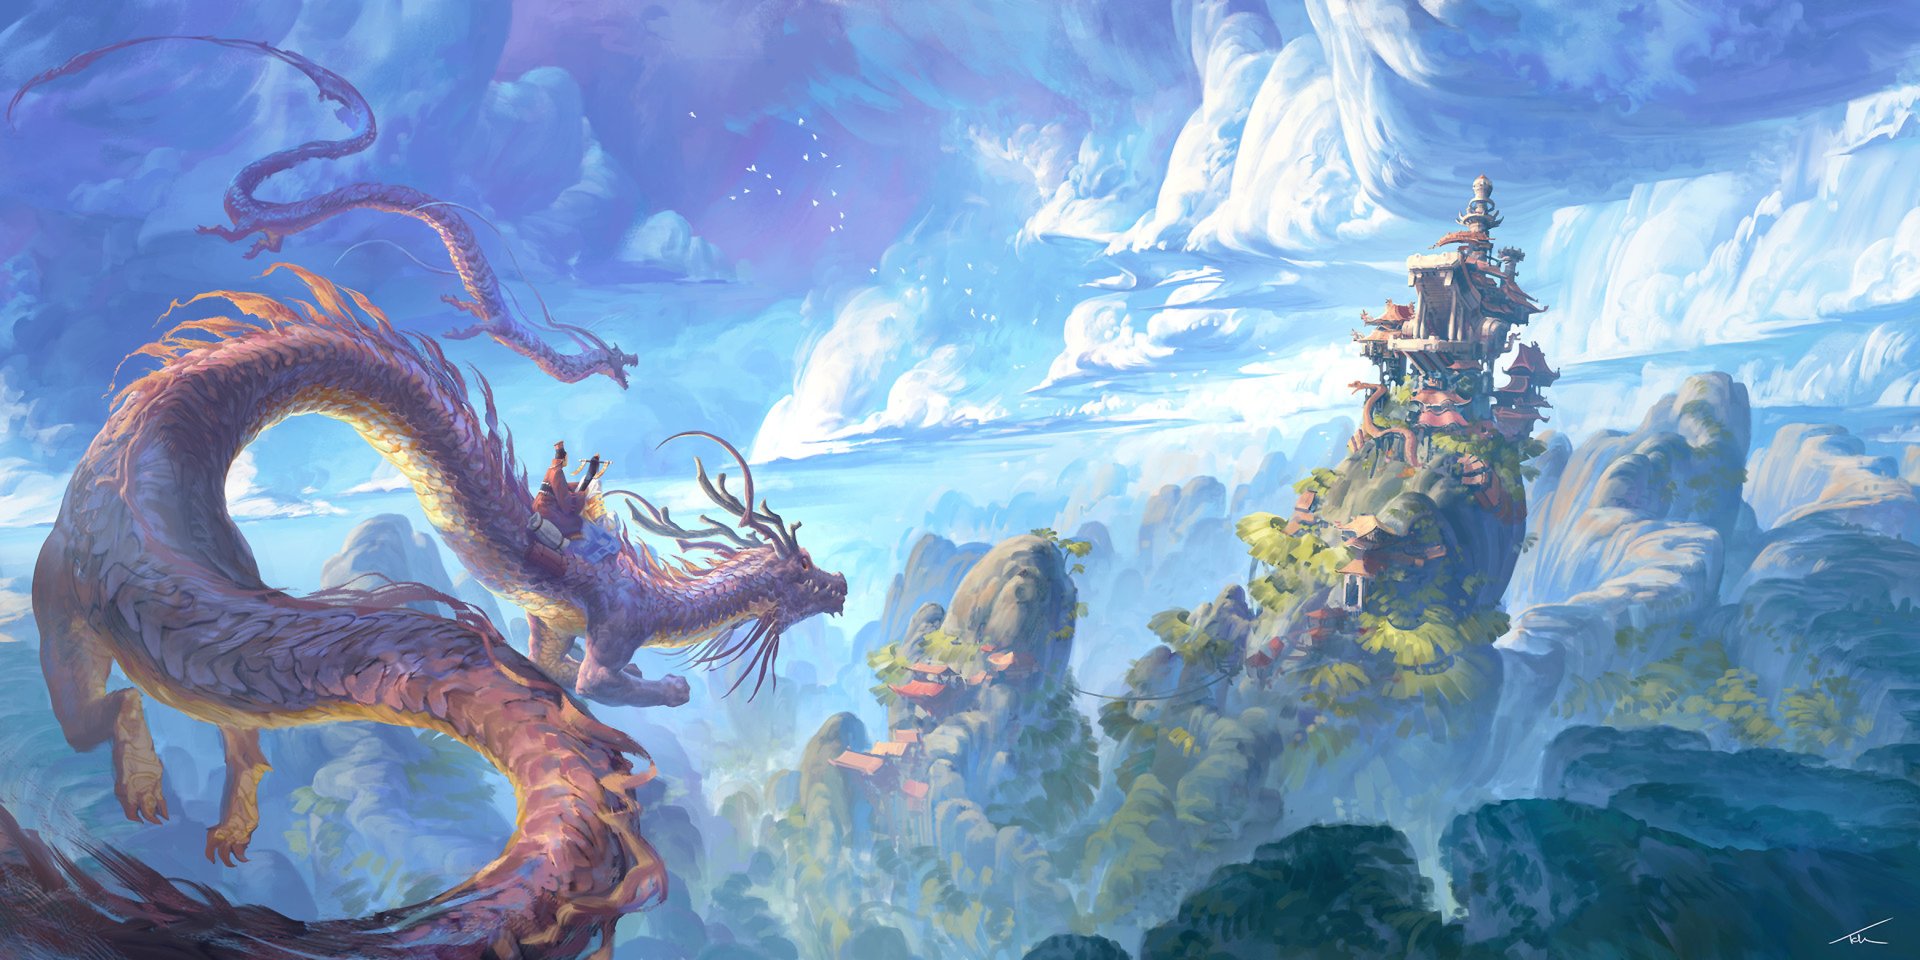 Hình nền rồng fantasy: Khám phá một thế giới rộng lớn và huyền bí, nơi mà những con rồng có nguồn gốc từ truyền thuyết và những câu chuyện cổ tích trở thành hiện thực. Hãy thưởng thức hình nền Rồng Fantasy đầy sáng tạo để tìm kiếm sự phiêu lưu và kích thích sự tưởng tượng!